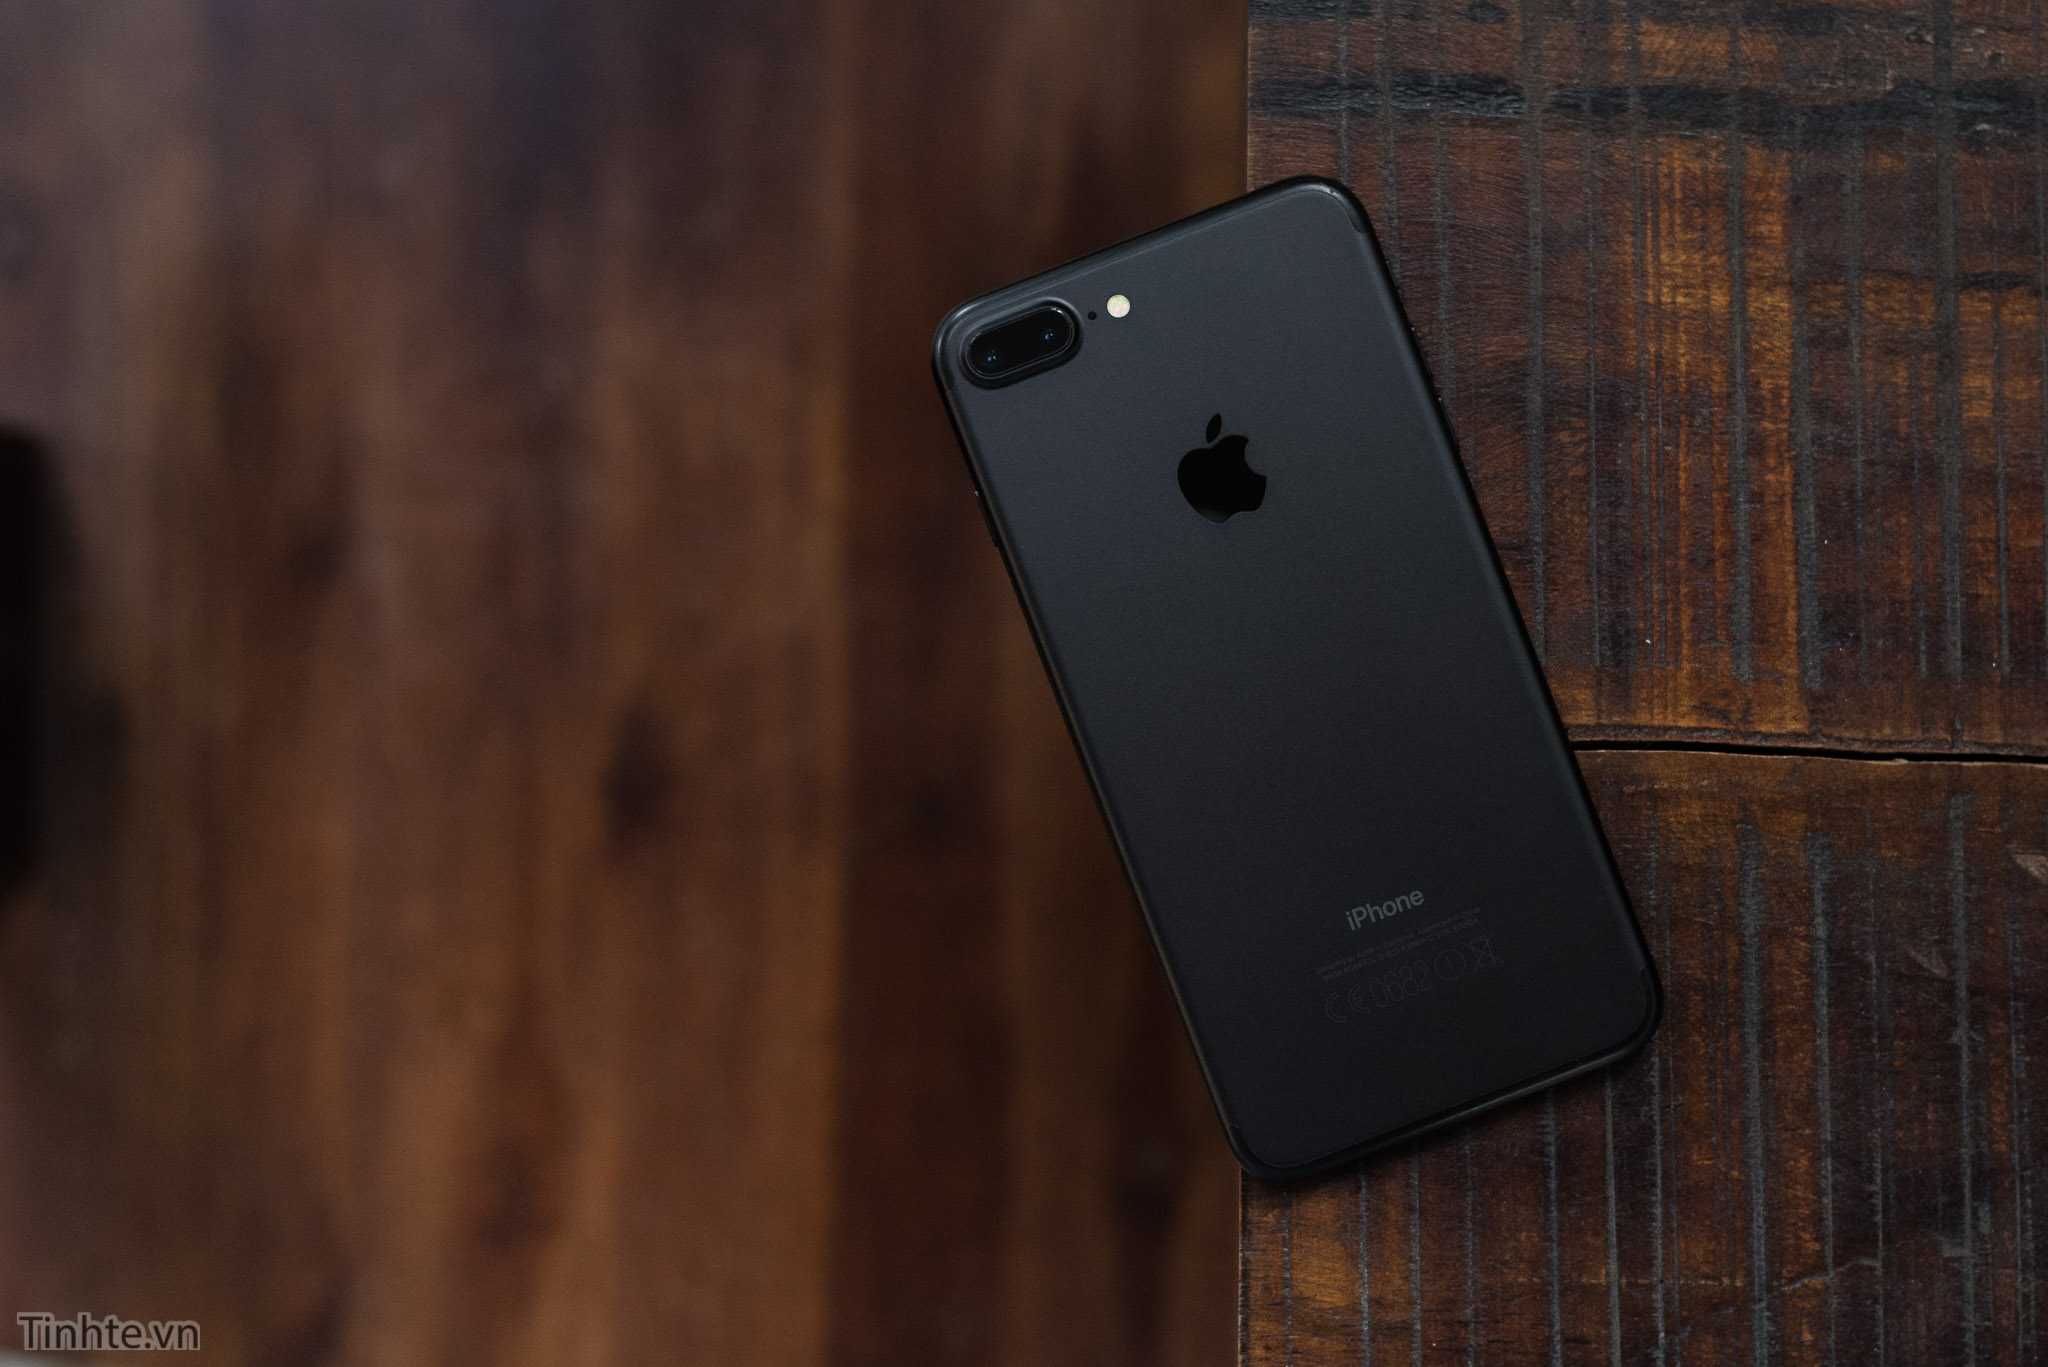 iPhone 7 Plus màu đen: Hãy khám phá cùng chúng tôi chiếc iPhone 7 Plus màu đen bí ẩn, đầy sang trọng và ấn tượng với hệ thống camera kép chụp ảnh hoàn hảo và hiệu năng mạnh mẽ.